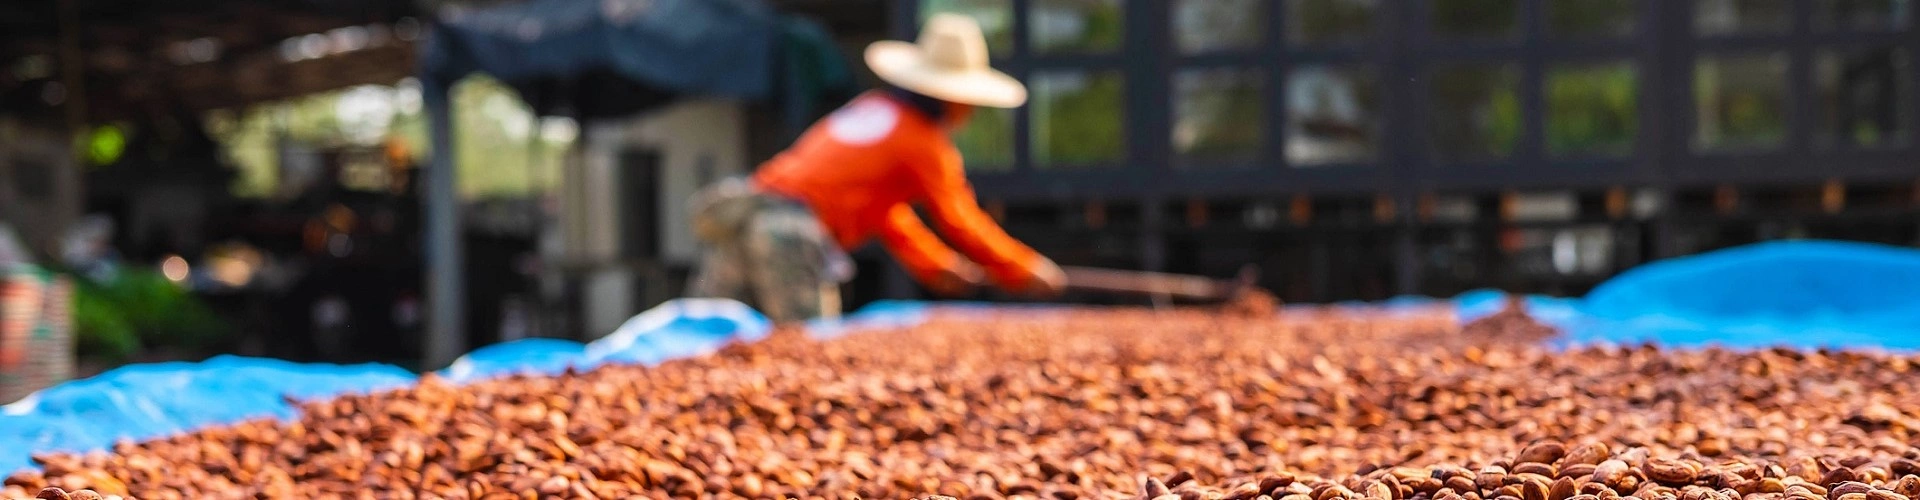 Terraço de cacau, fruta típica do Brasil, secando ao ar livre. Ao fundo, um homem de camisa laranja e chapéu de palha na cabeça mexe nas sementes.